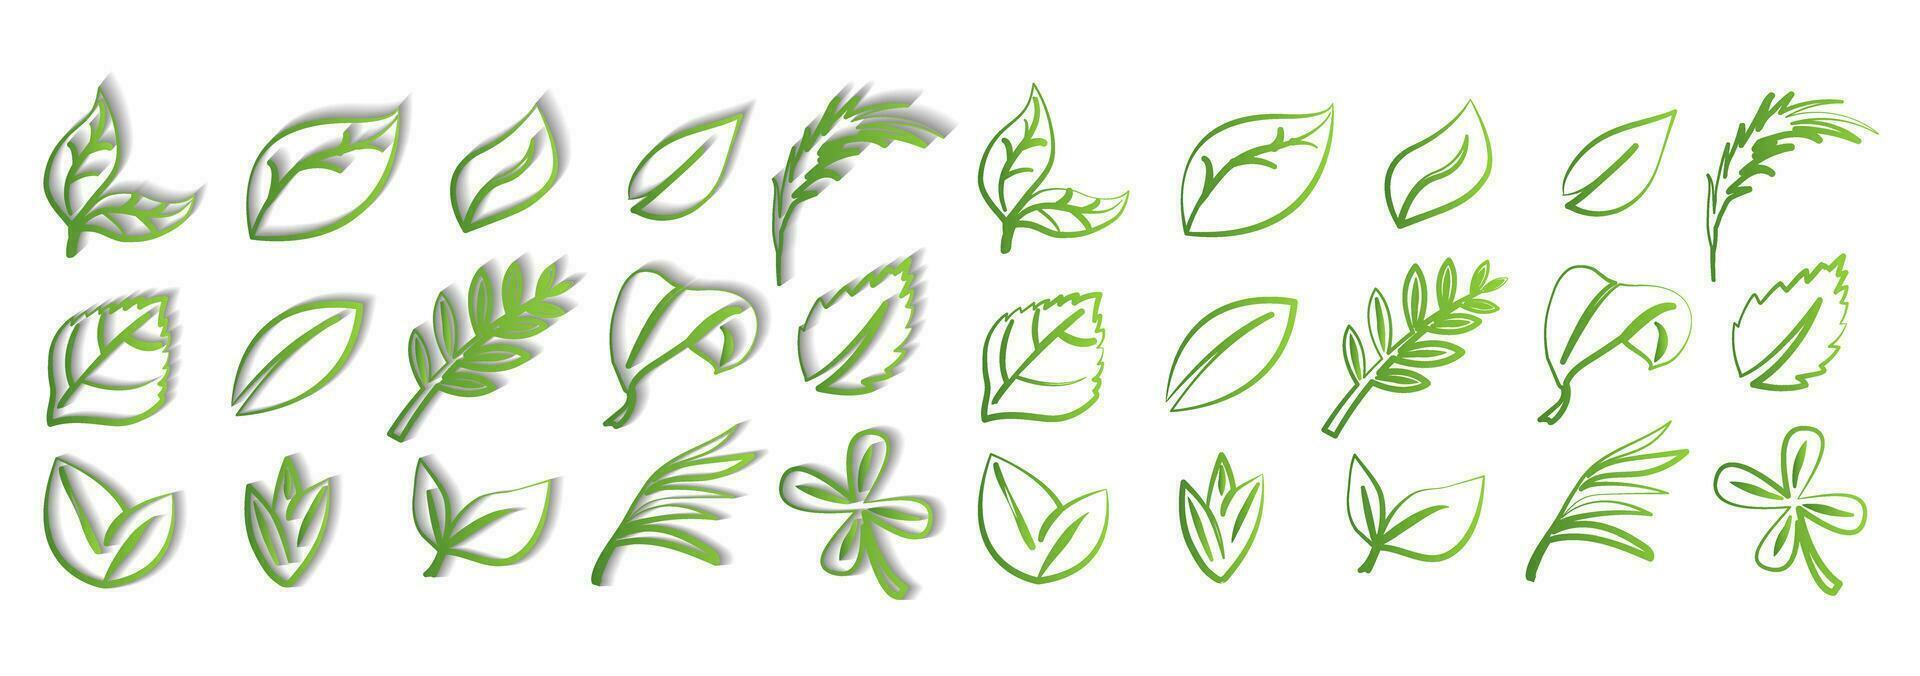 en uppsättning av grön löv på en vit bakgrund med och utan en skugga, för logotyper, mönster, för de symbolism av de grön planet vektor